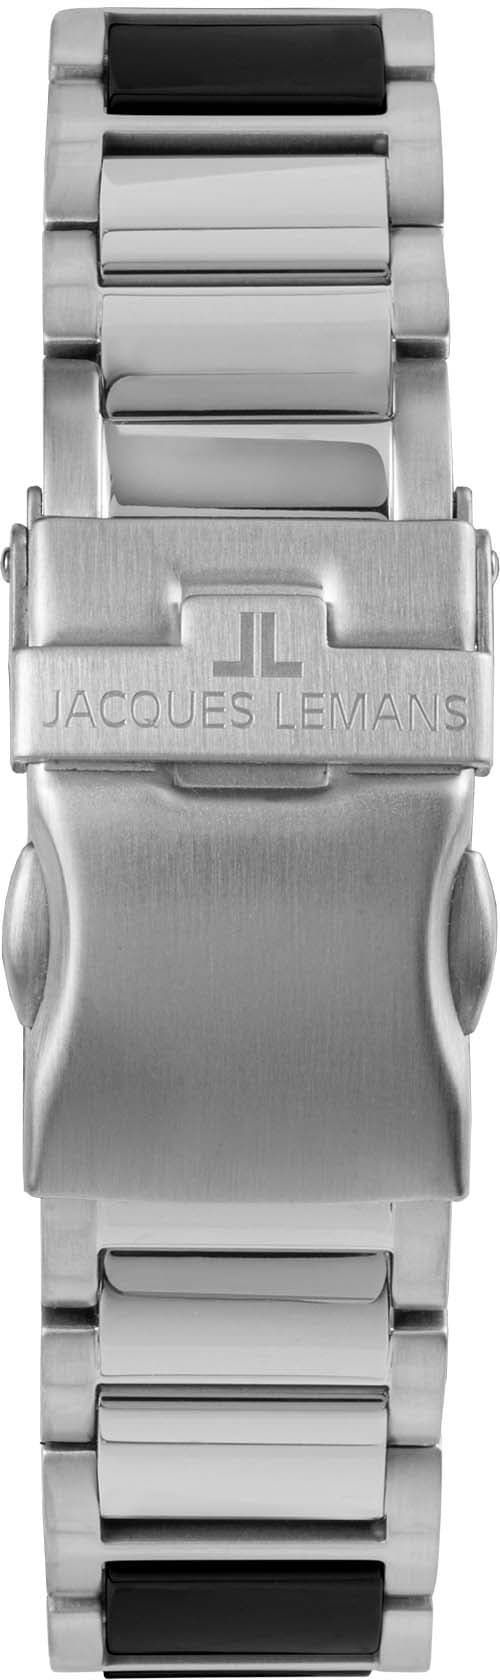 Jacques Lemans Keramikuhr »Liverpool, 42-12A«, Quarzuhr, Armbanduhr, Damenuhr, Datum, Leuchtzeiger